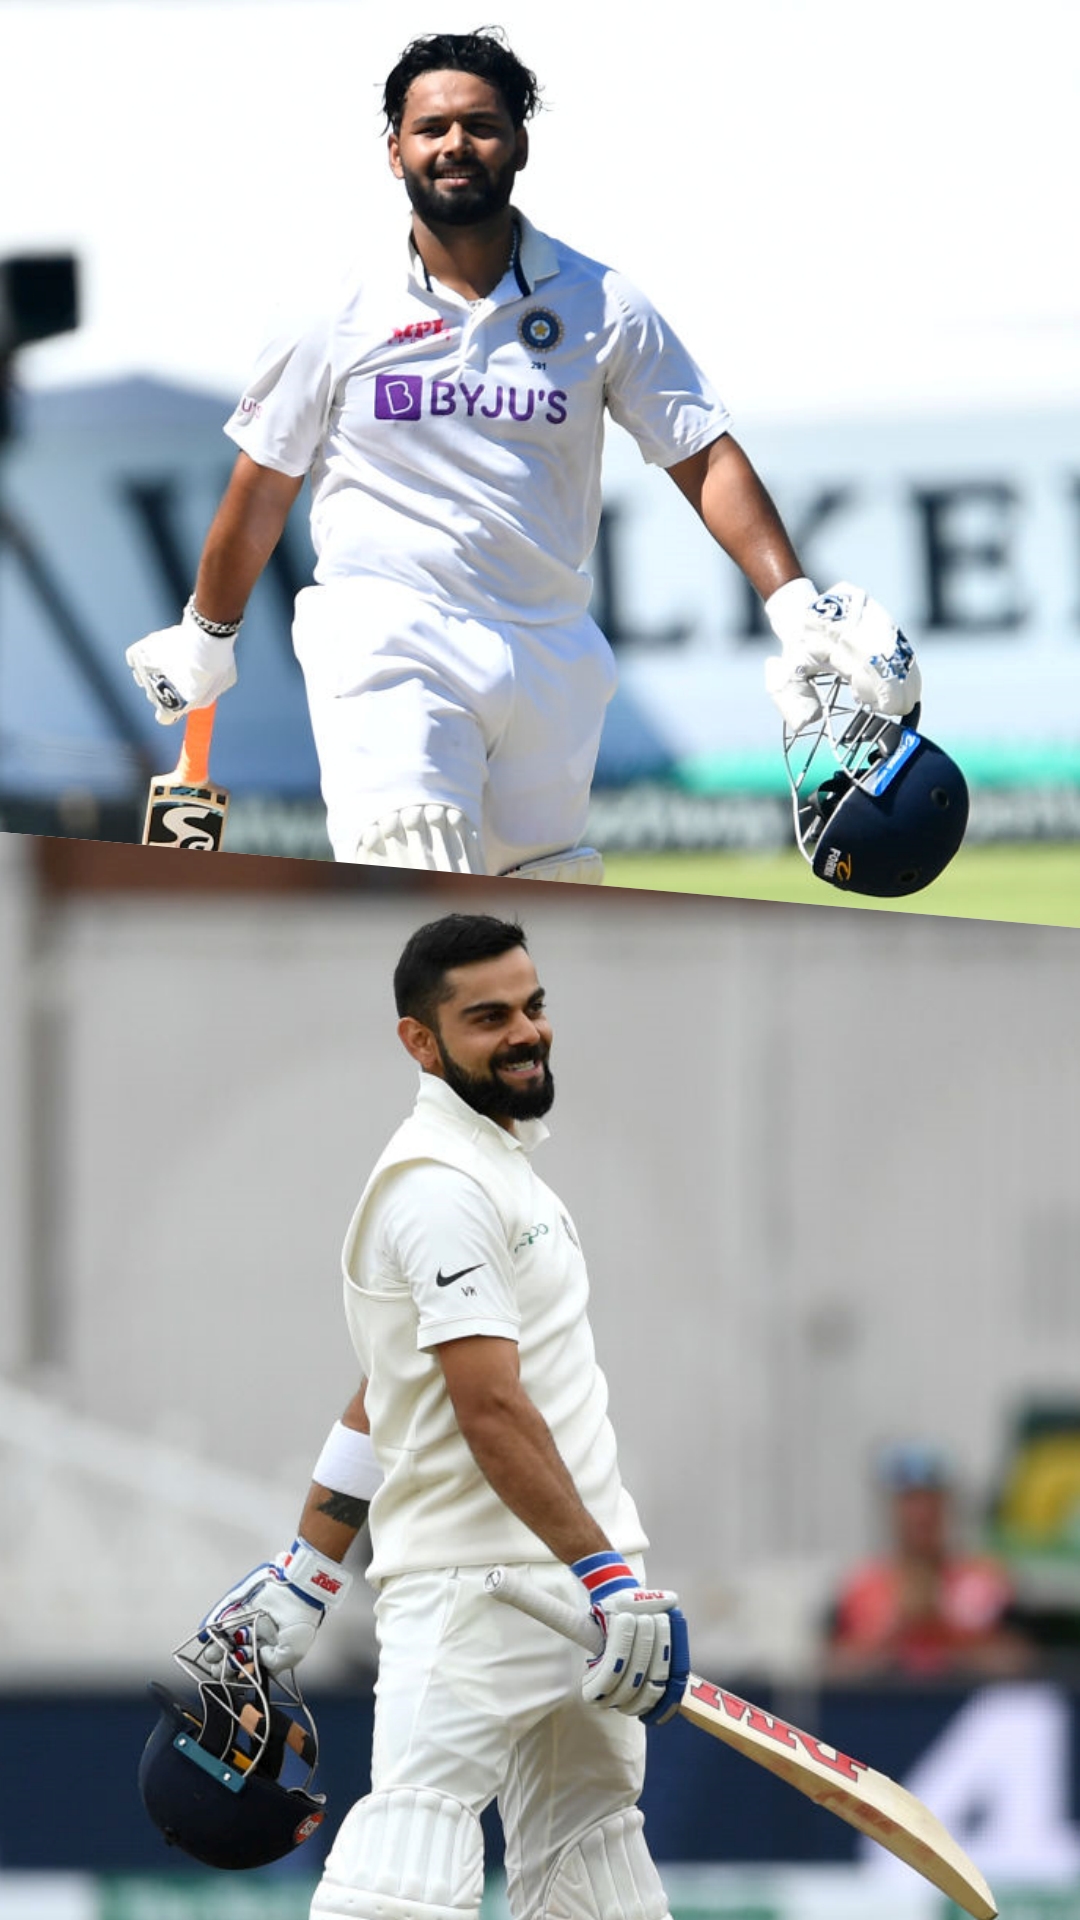 2022 में टेस्ट में सर्वाधिक रन बनाने वाले 5 भारतीय खिलाड़ी